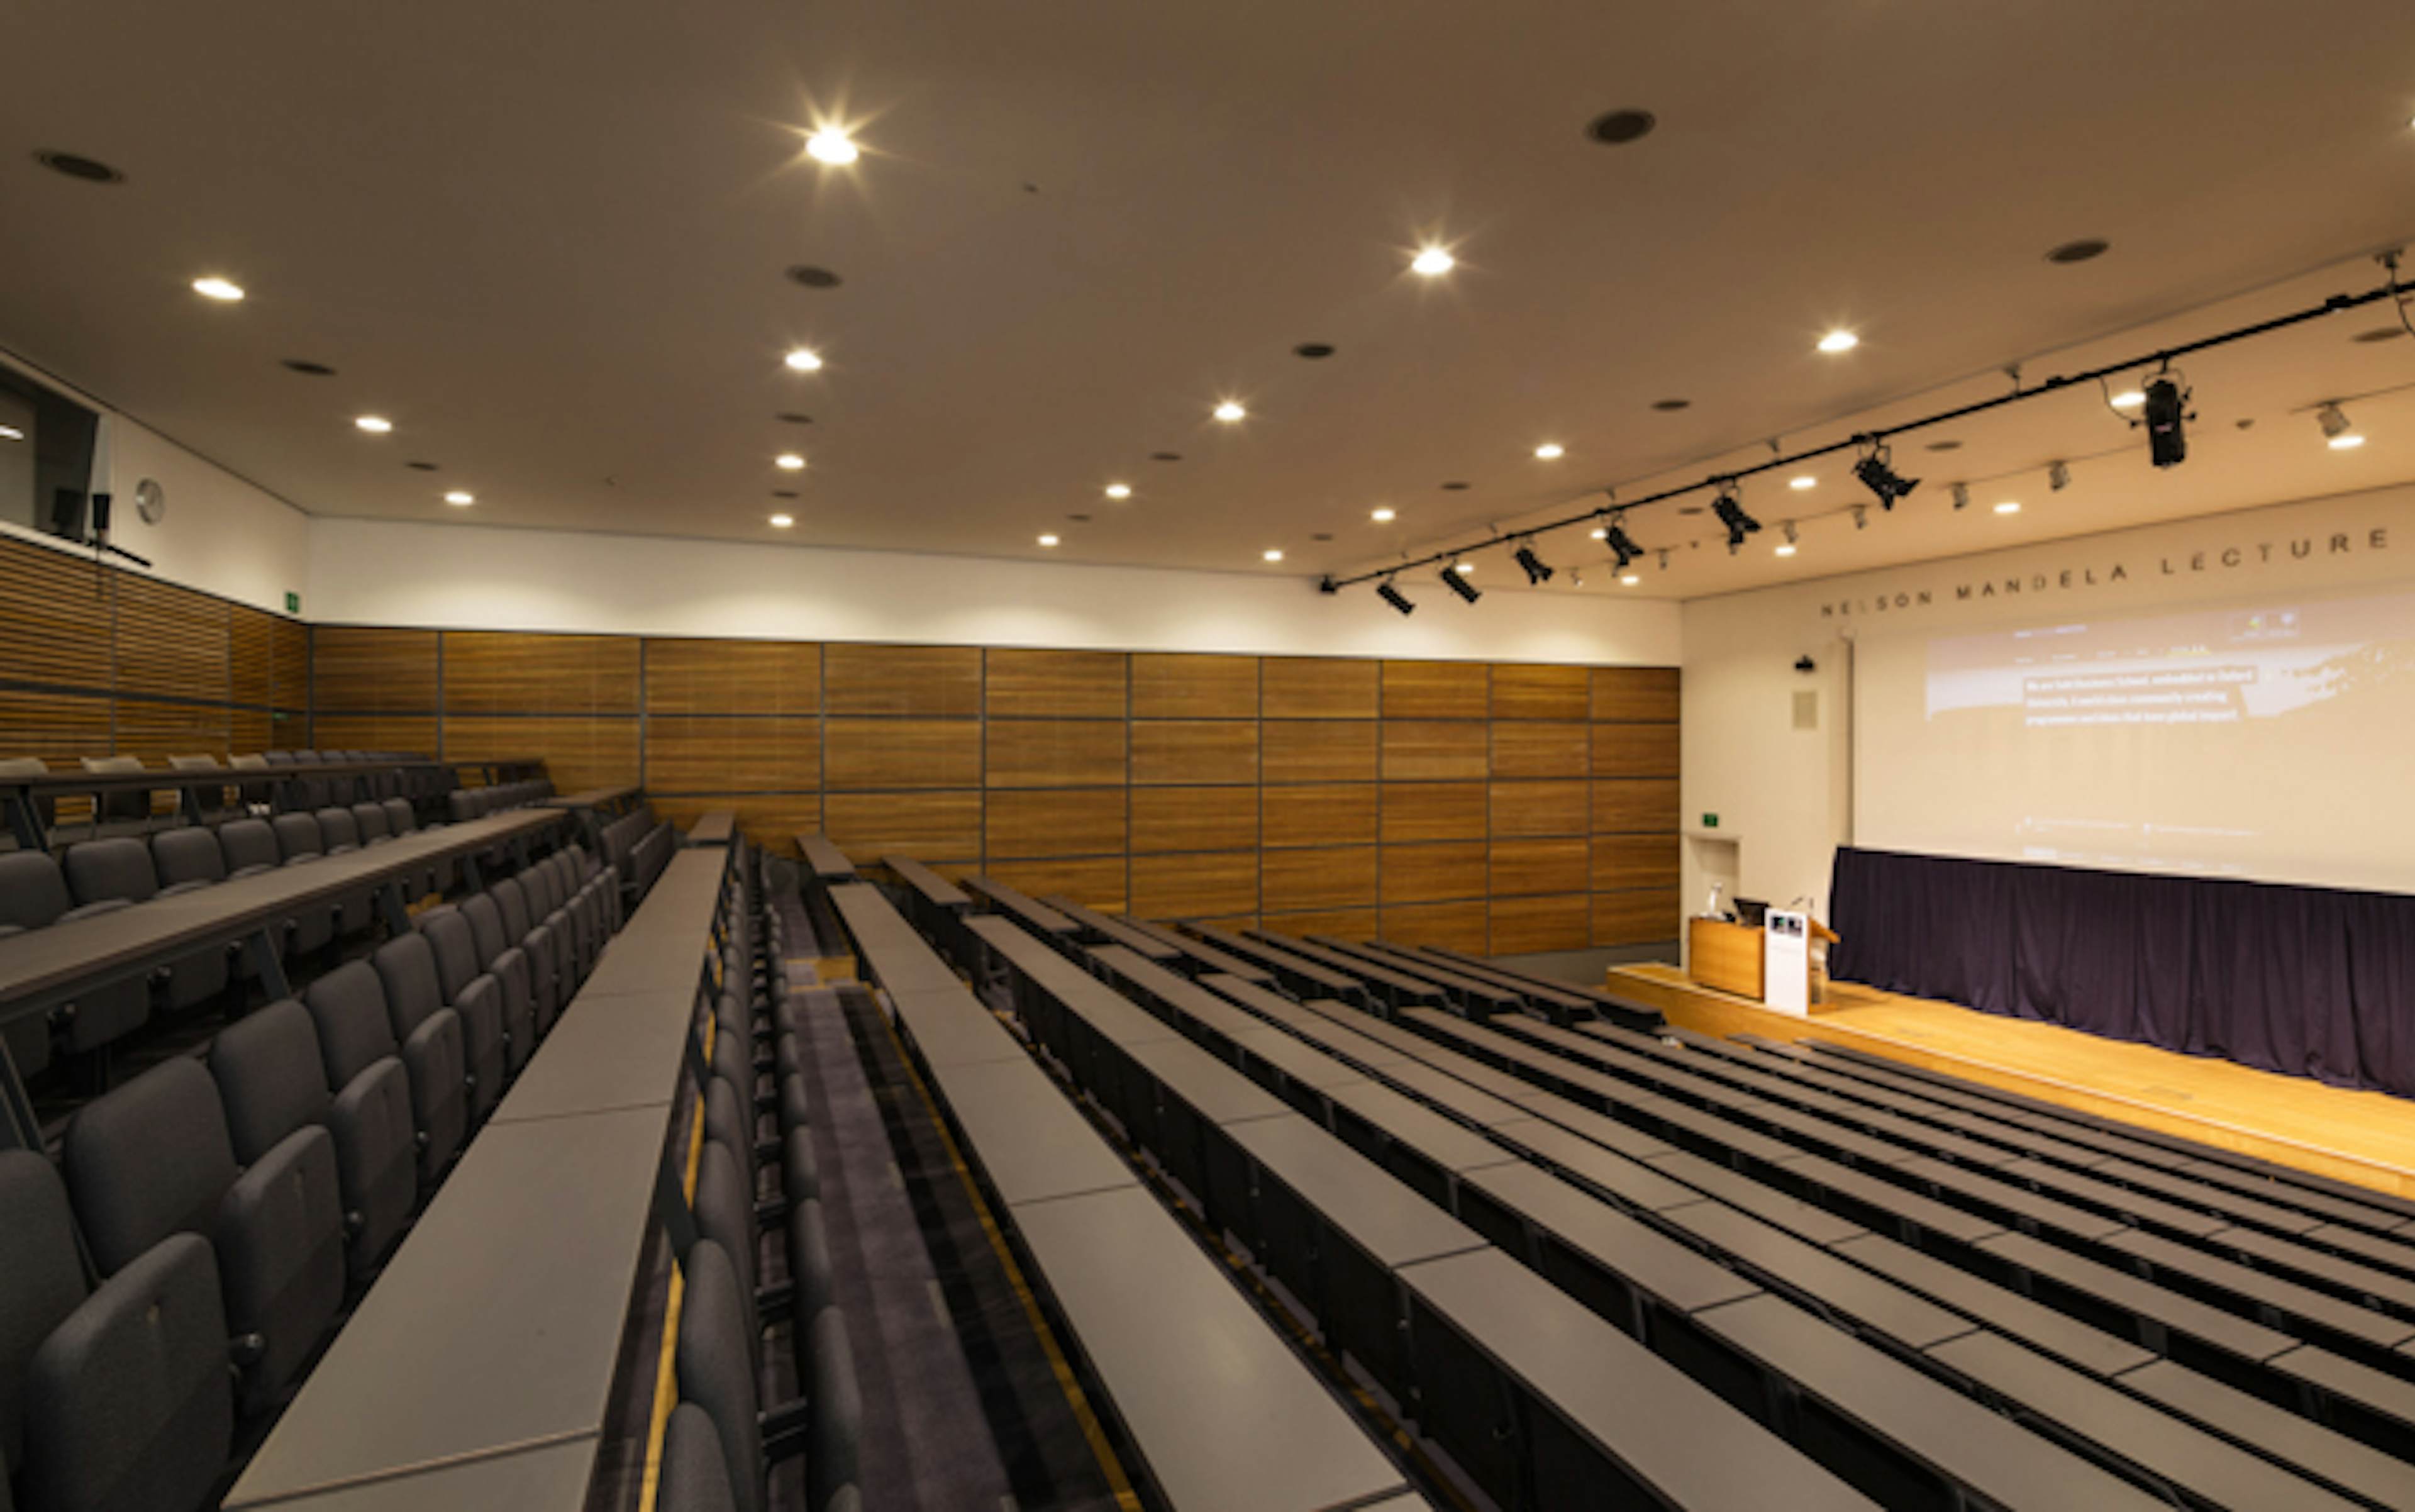 Park End Street Venue, Saïd Business School, University of Oxford - Nelson Mandela Lecture Theatre image 1